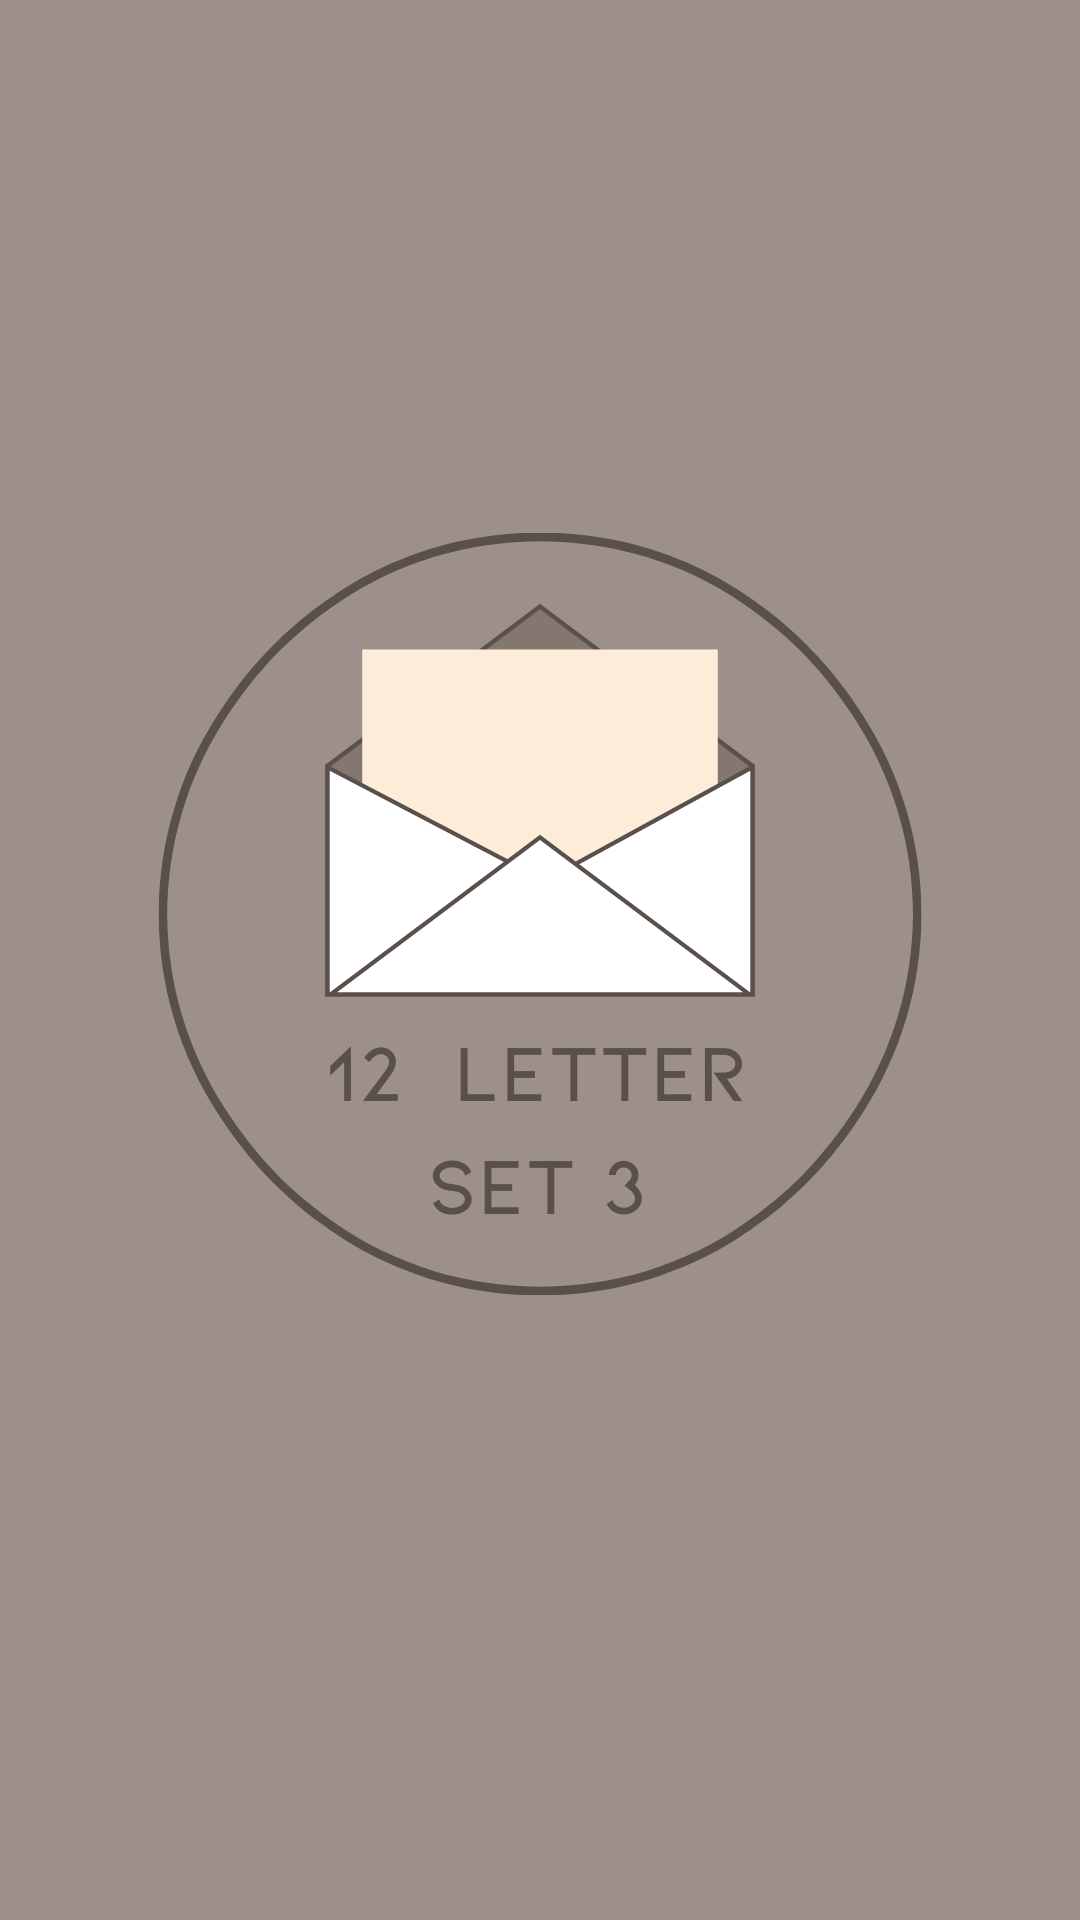 12 Letter Set 3